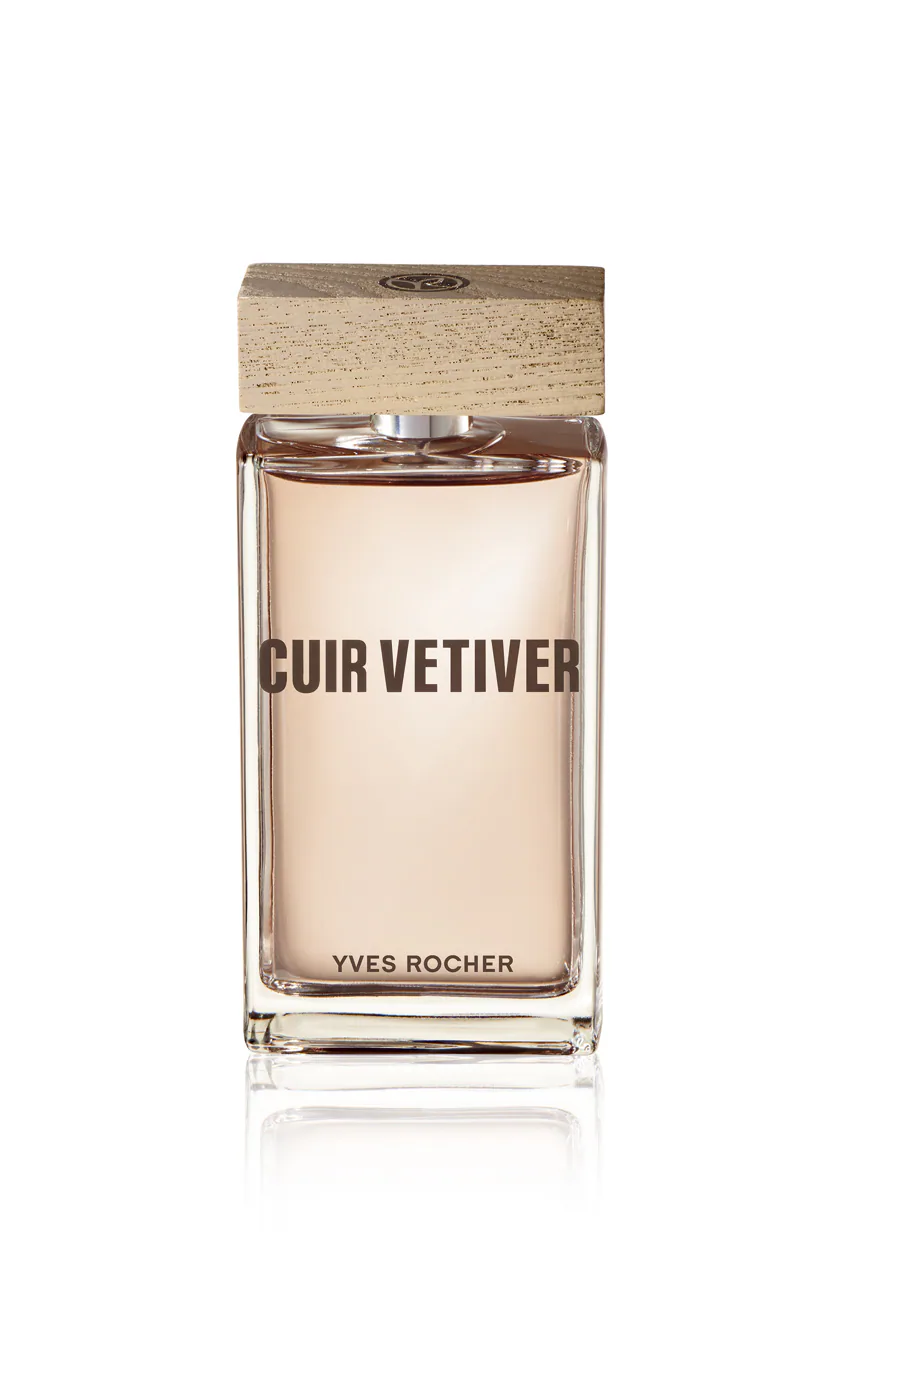 Perfumes para el día del padre: Cuir Vetiver de Yves Rocher